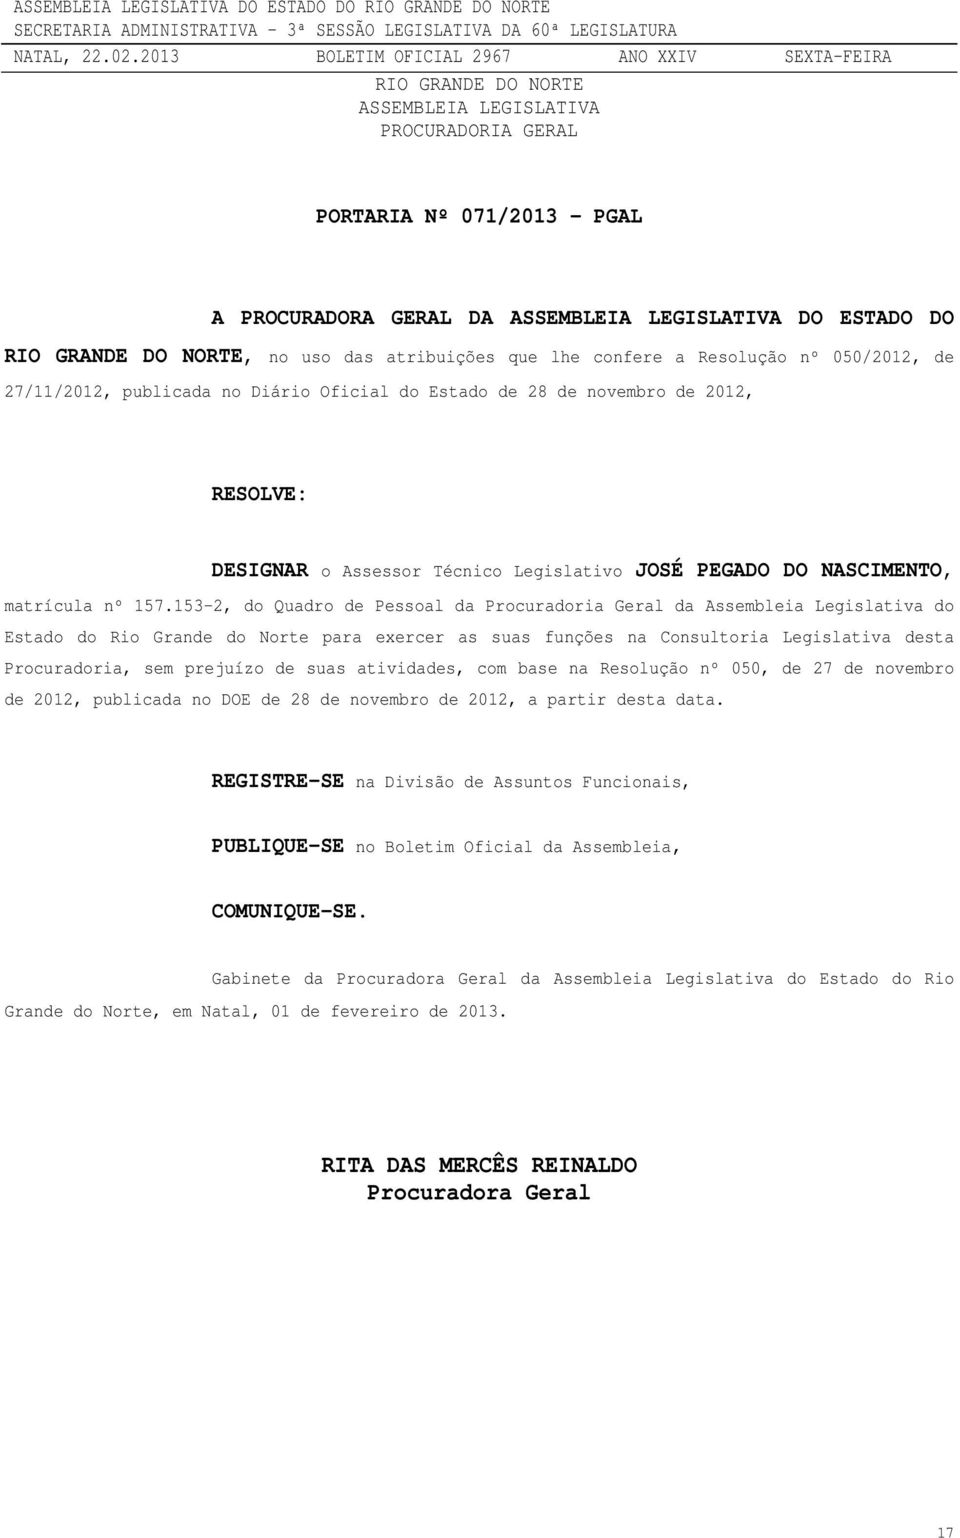 153-2, do Quadro de Pessoal da Procuradoria Geral da Assembleia Legislativa do Estado do Rio Grande do Norte para exercer as suas funções